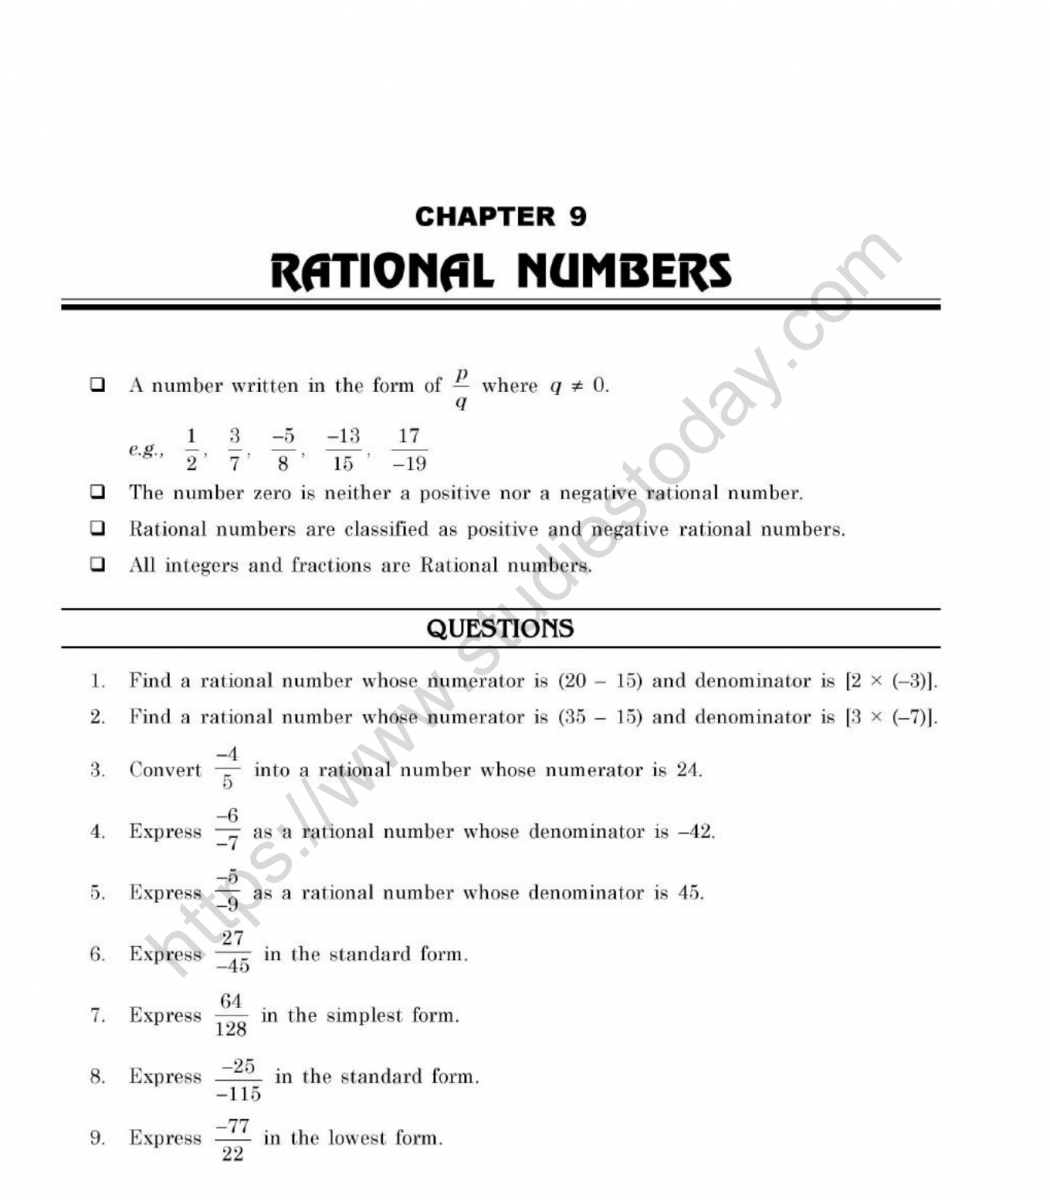 cbse-class-7-mental-maths-rational-numbers-worksheet